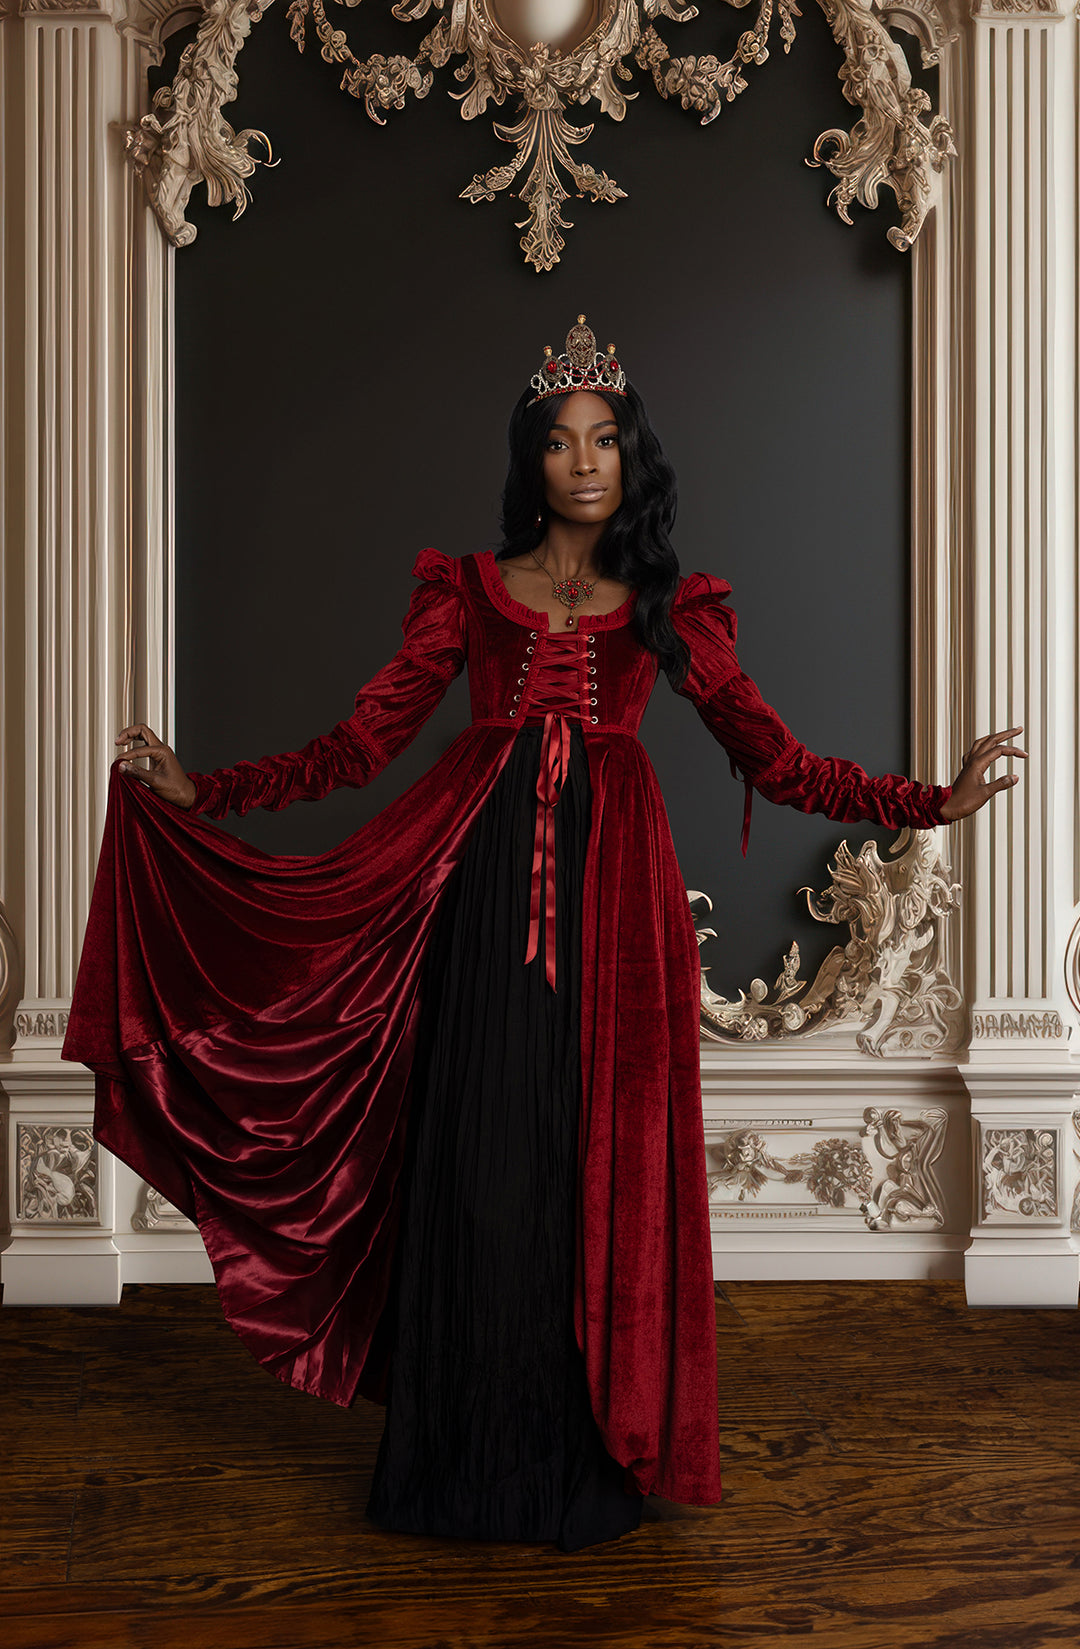 Red Velvet Bridgerton Dress - Regency Empire Waist